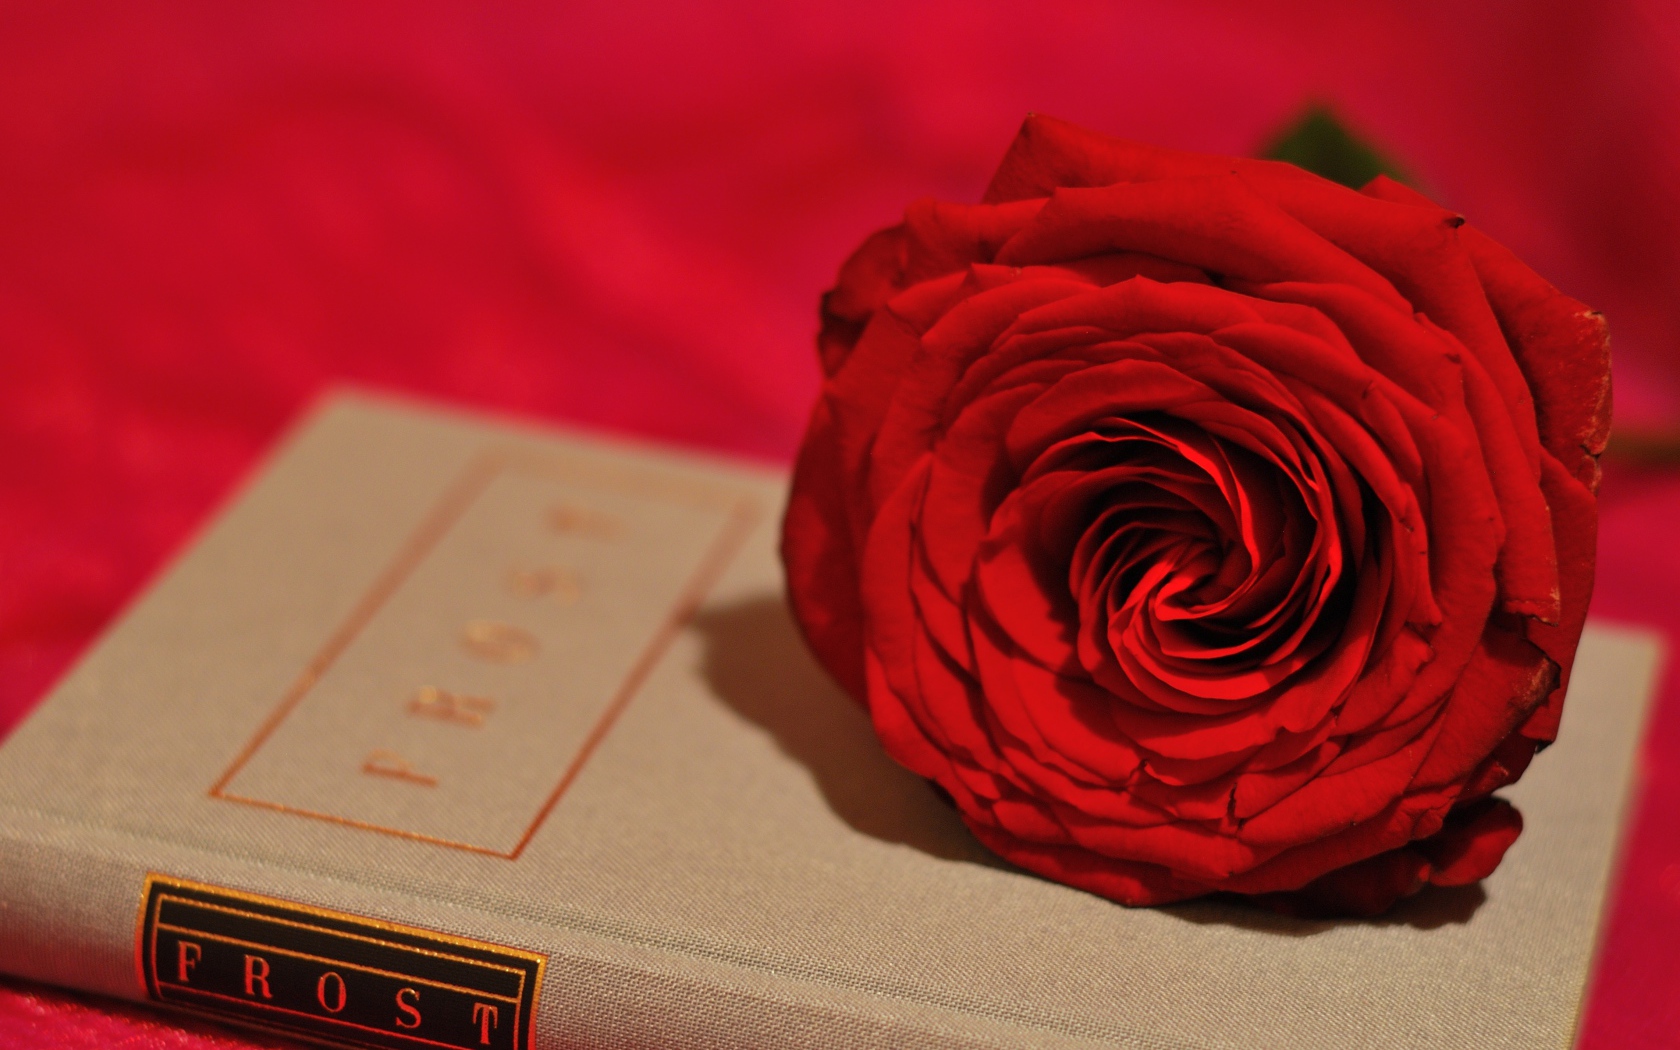 Большая красивая красная роза лежит на книге